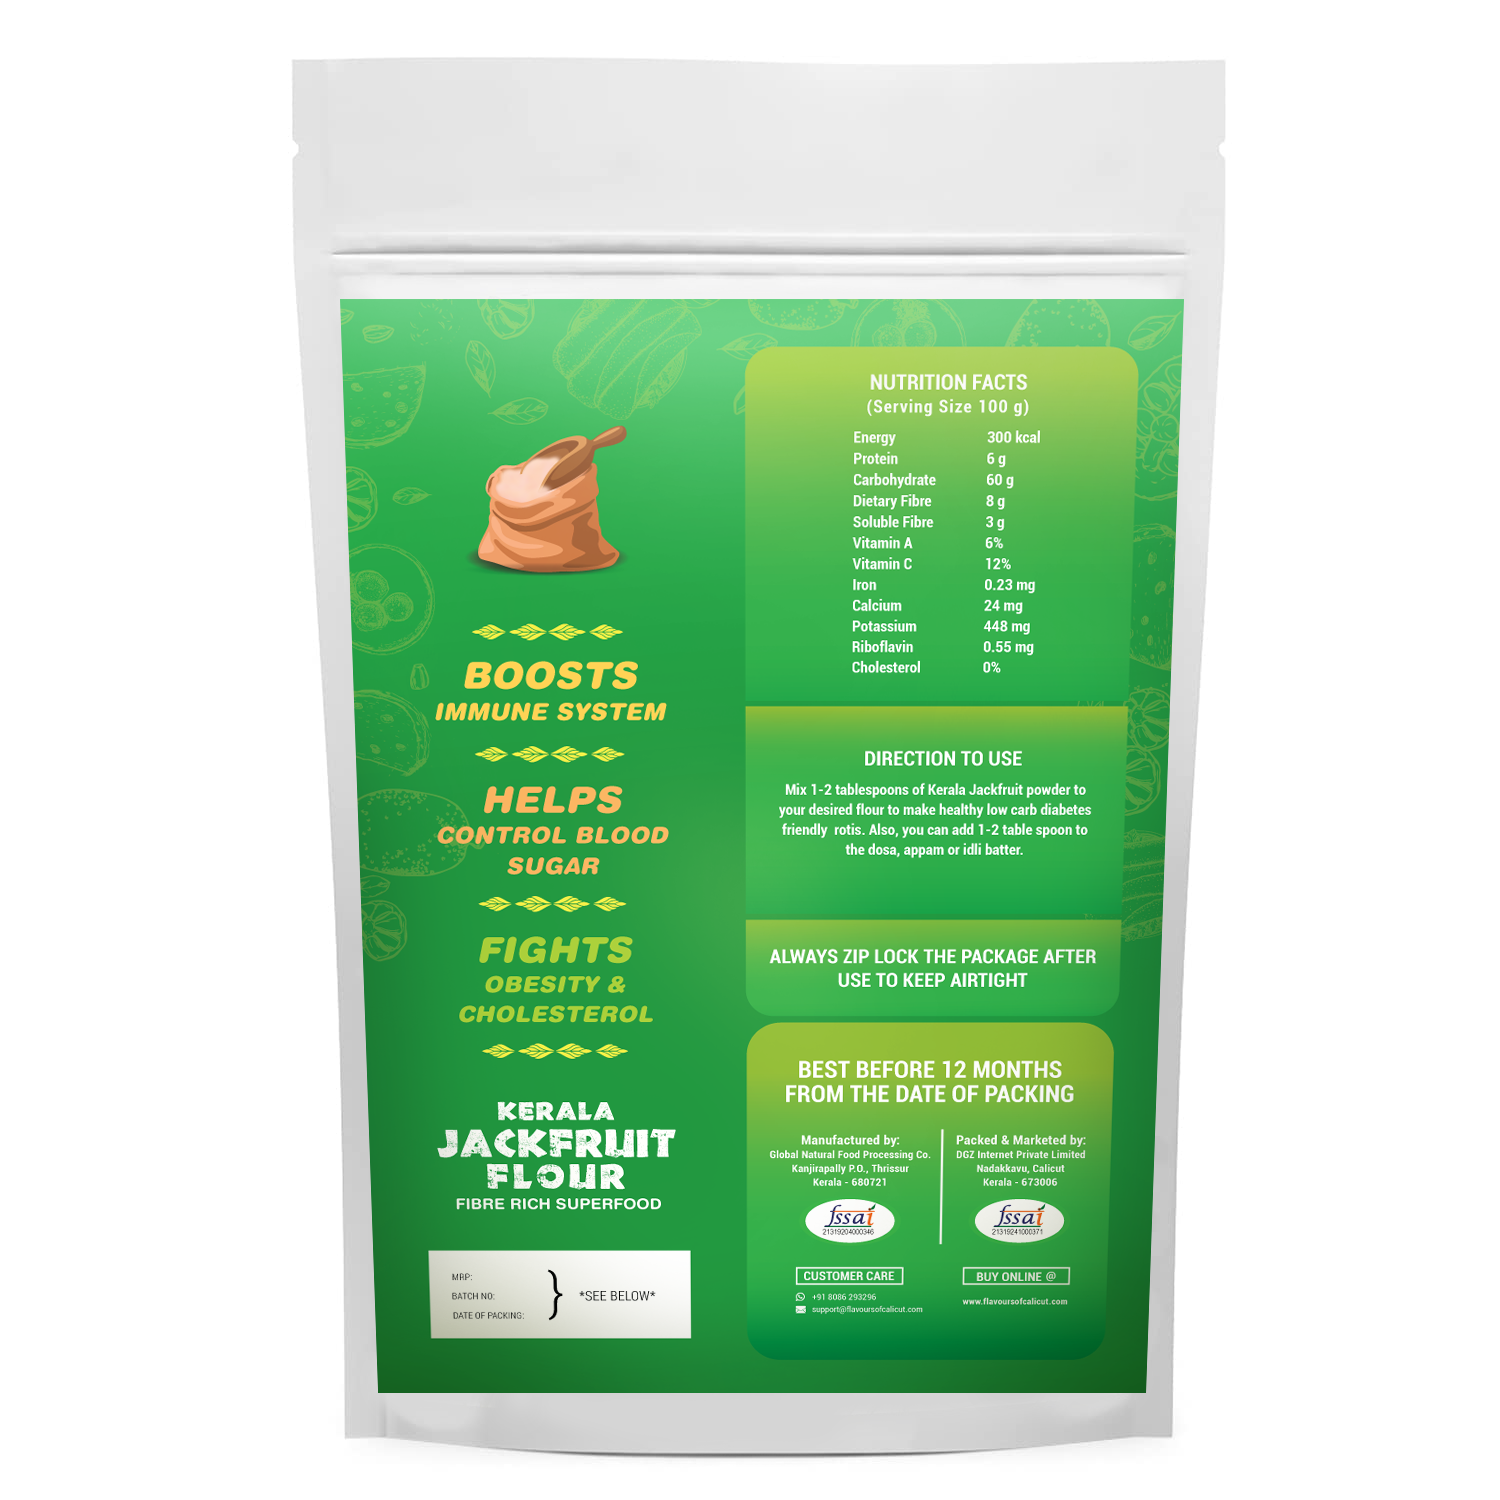 Kerala Jackfruit Flour